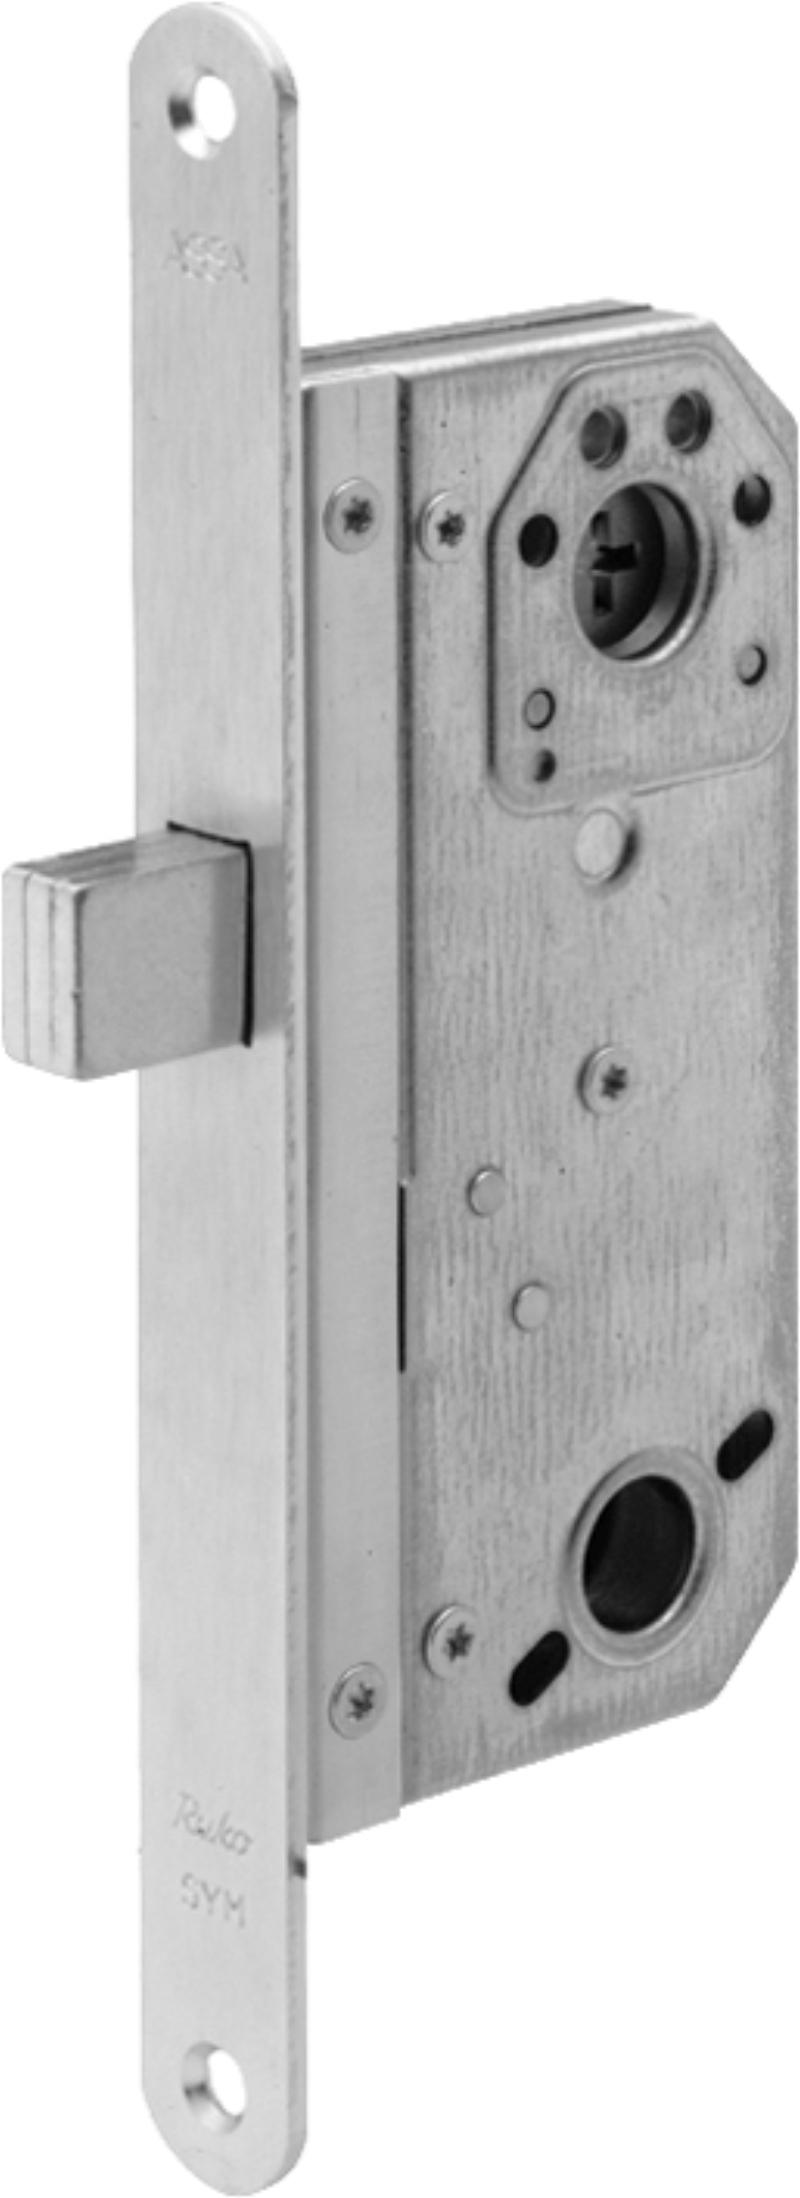 Assa lock box 9788 w/tin (520892)